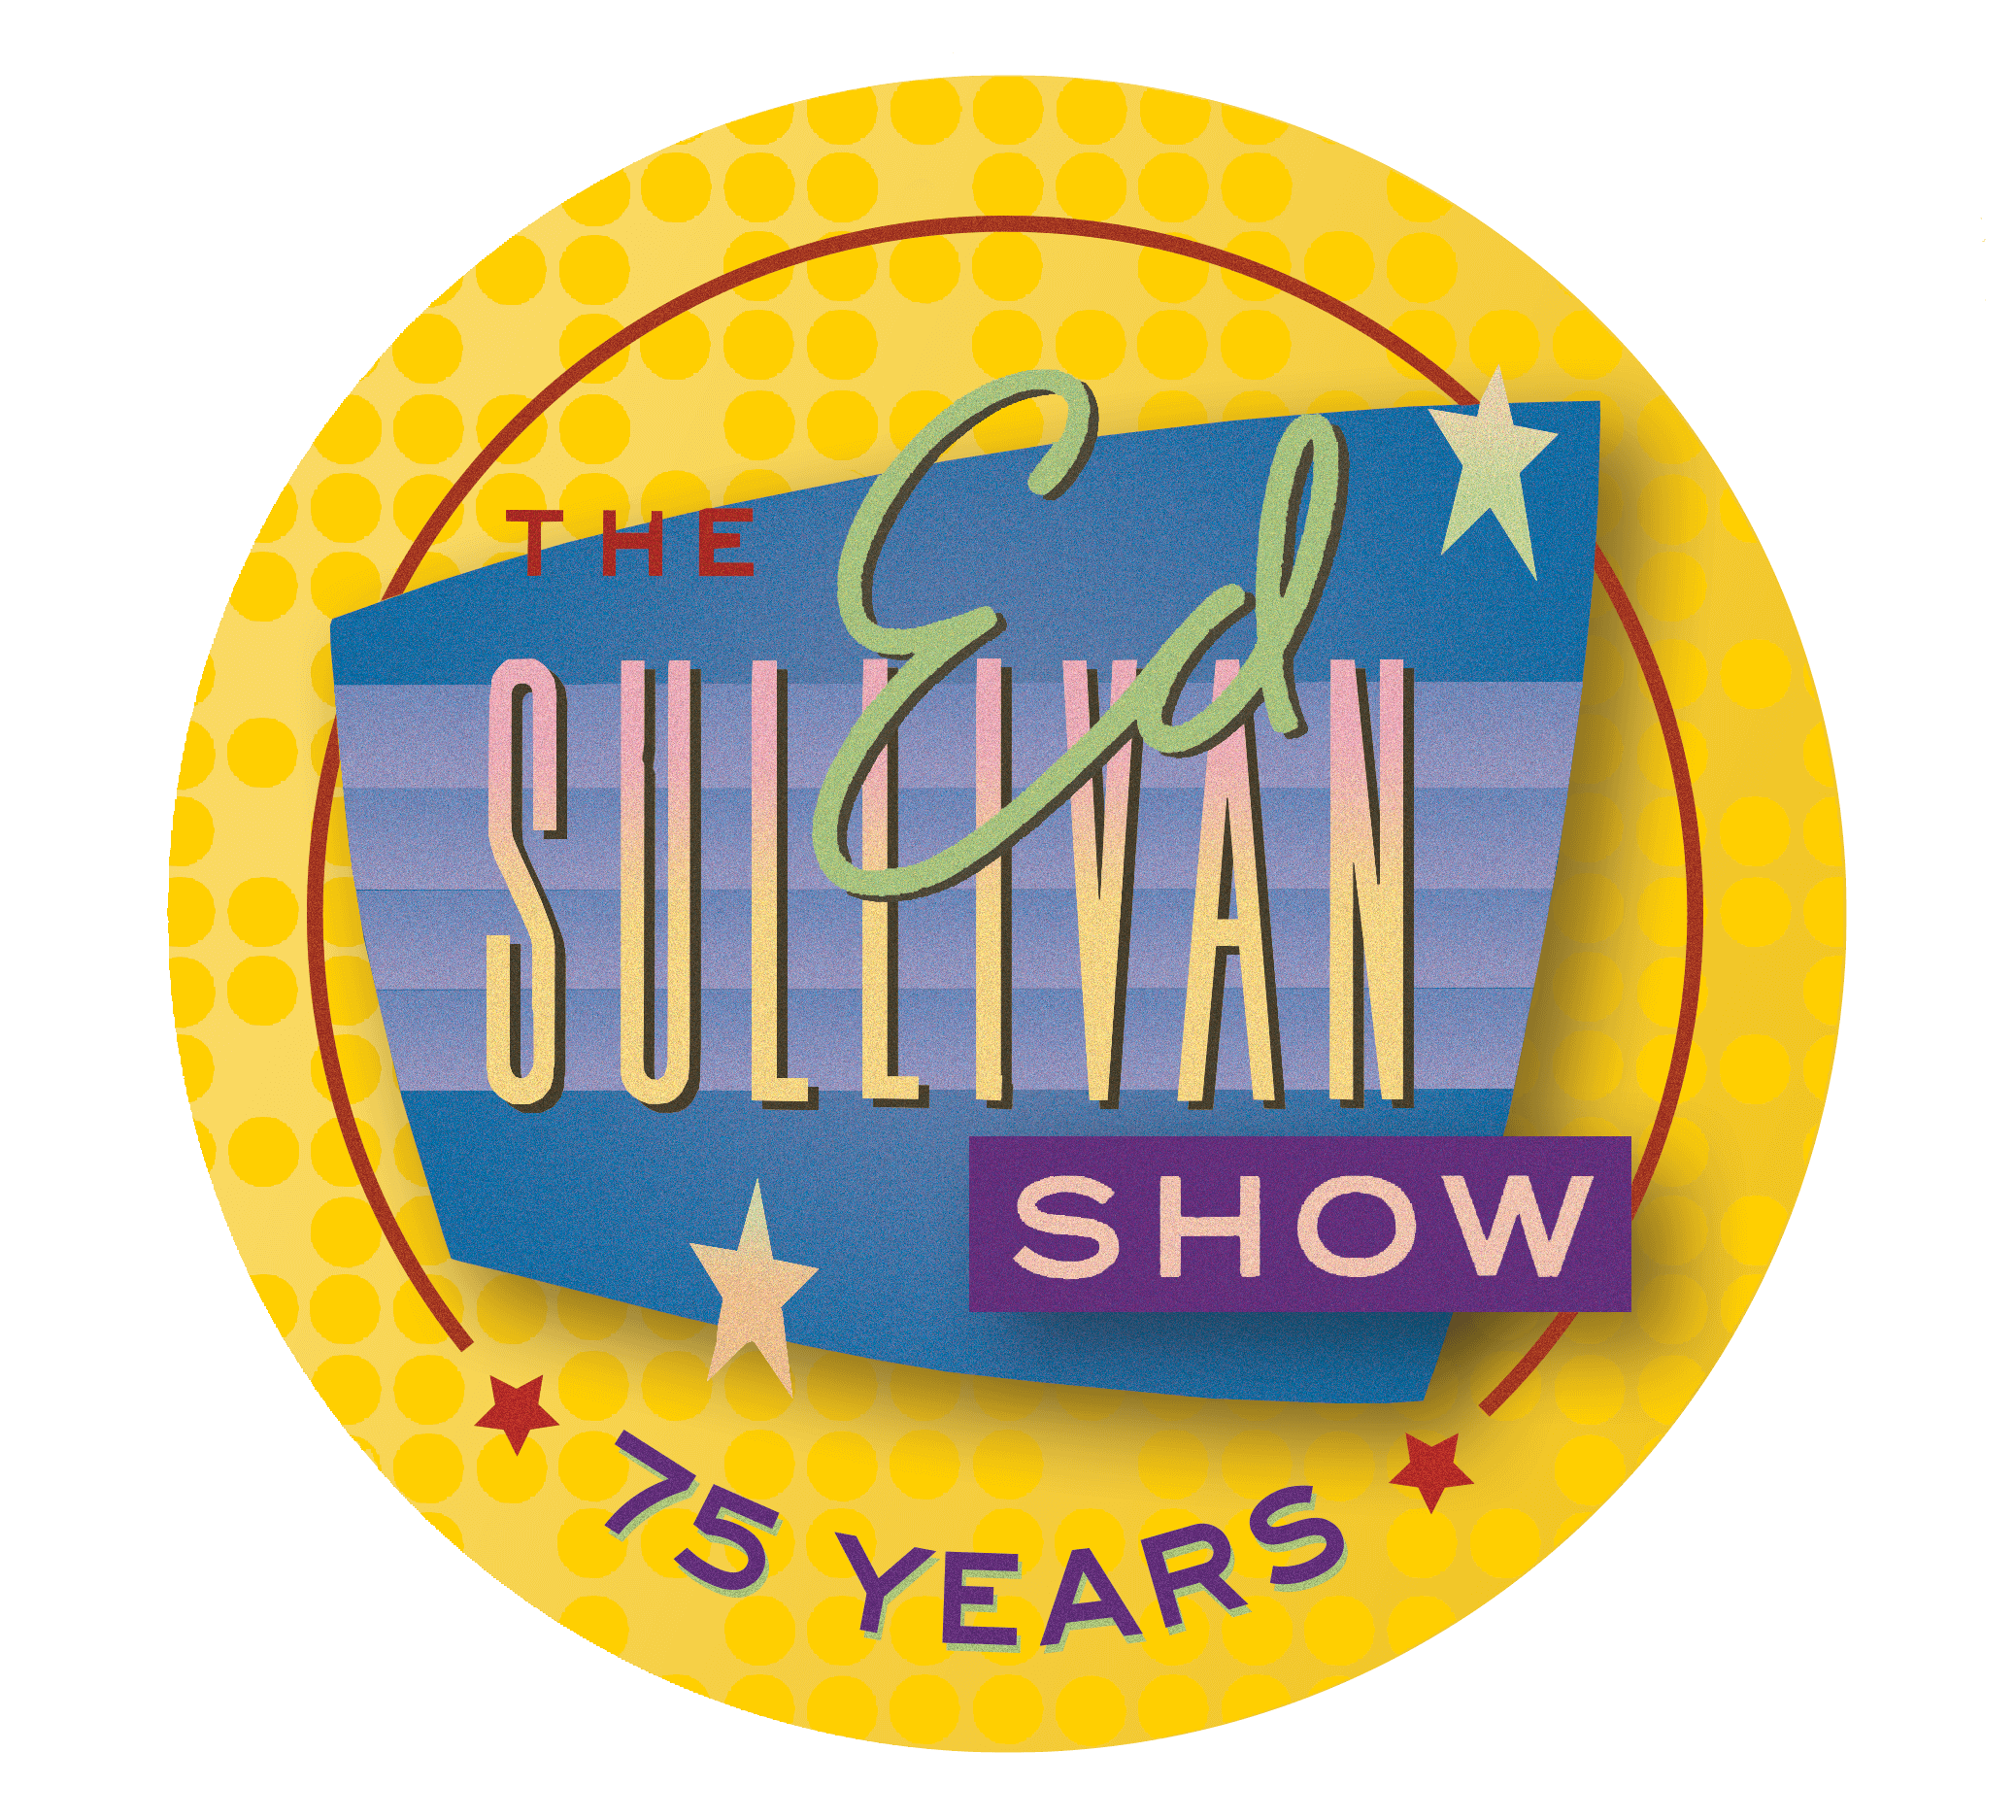 Show History Ed Sullivan Show